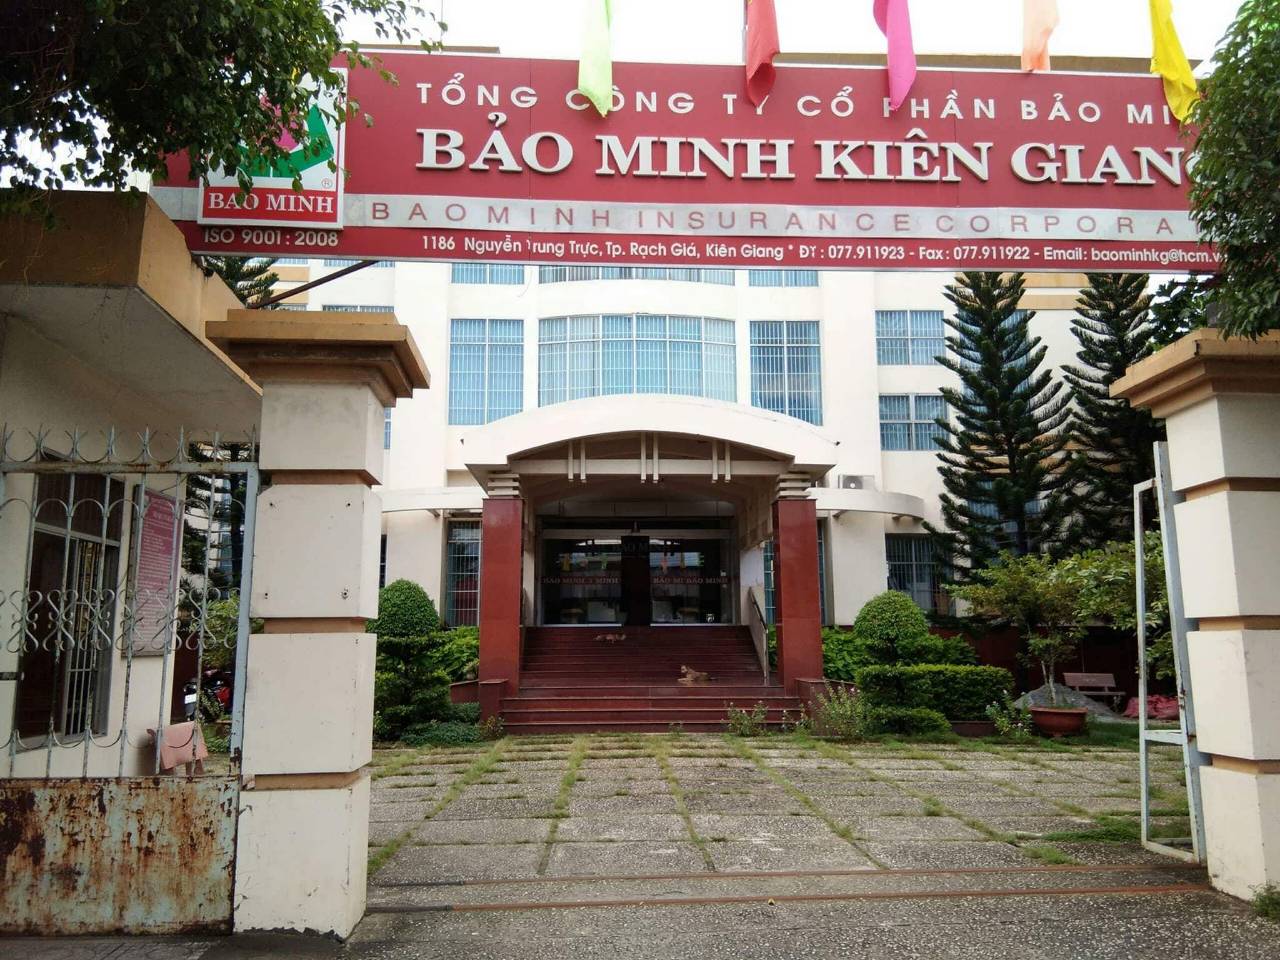 I. Giới thiệu Bảo Minh Kiên Giang